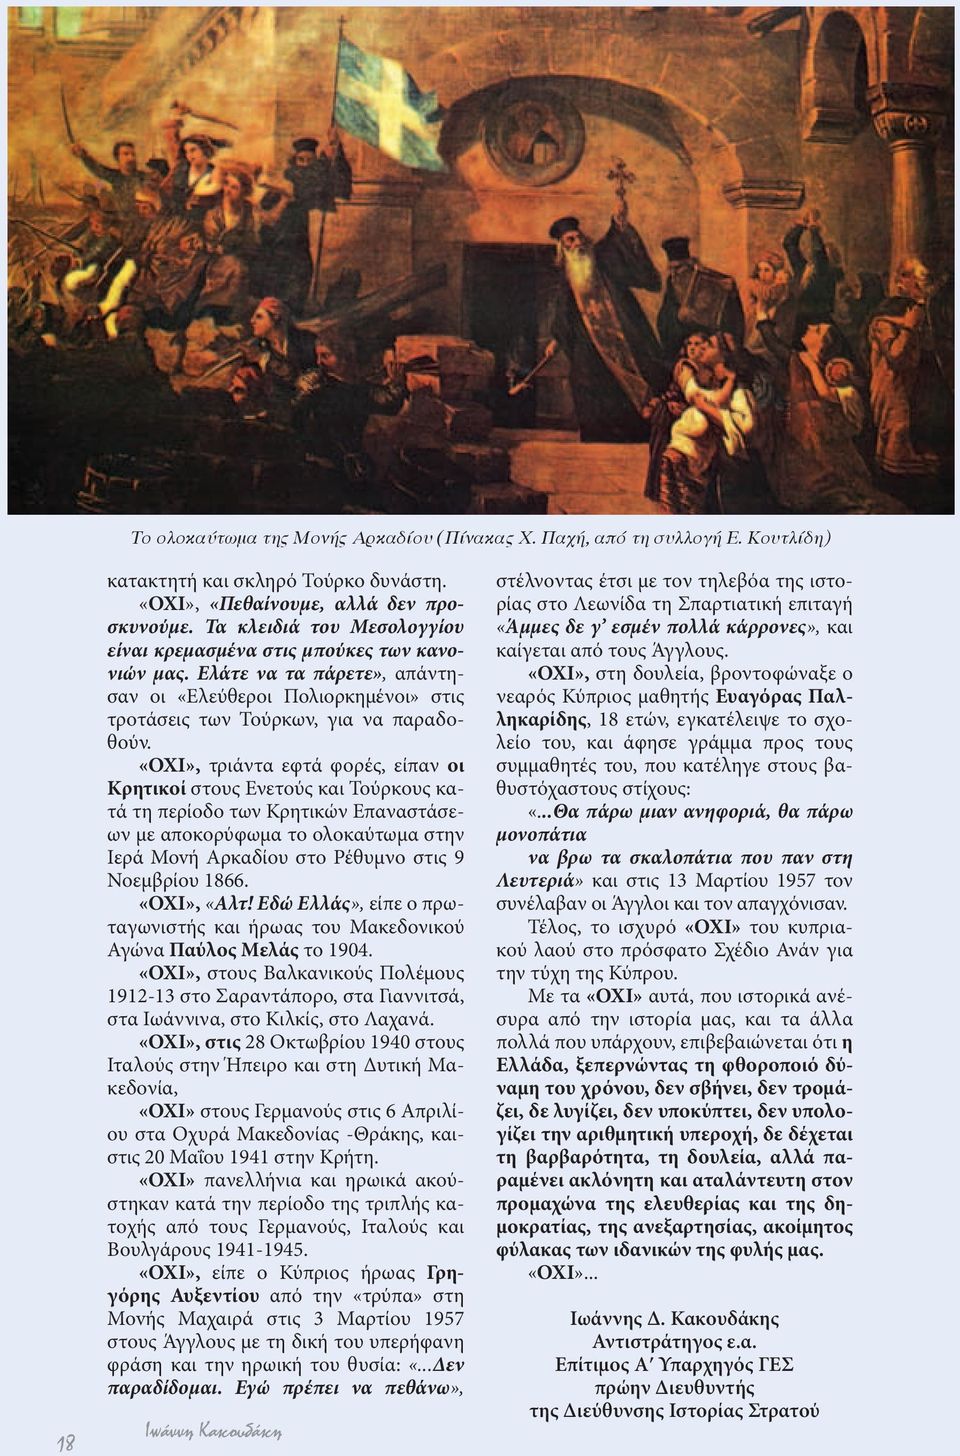 «ΟΧΙ», τριάντα εφτά φορές, είπαν οι Κρητικοί στους Ενετούς και Τούρκους κατά τη περίοδο των Κρητικών Επαναστάσεων με αποκορύφωμα το ολοκαύτωμα στην Ιερά Movή Αρκαδίου στο Ρέθυμνο στις 9 Νοεμβρίου